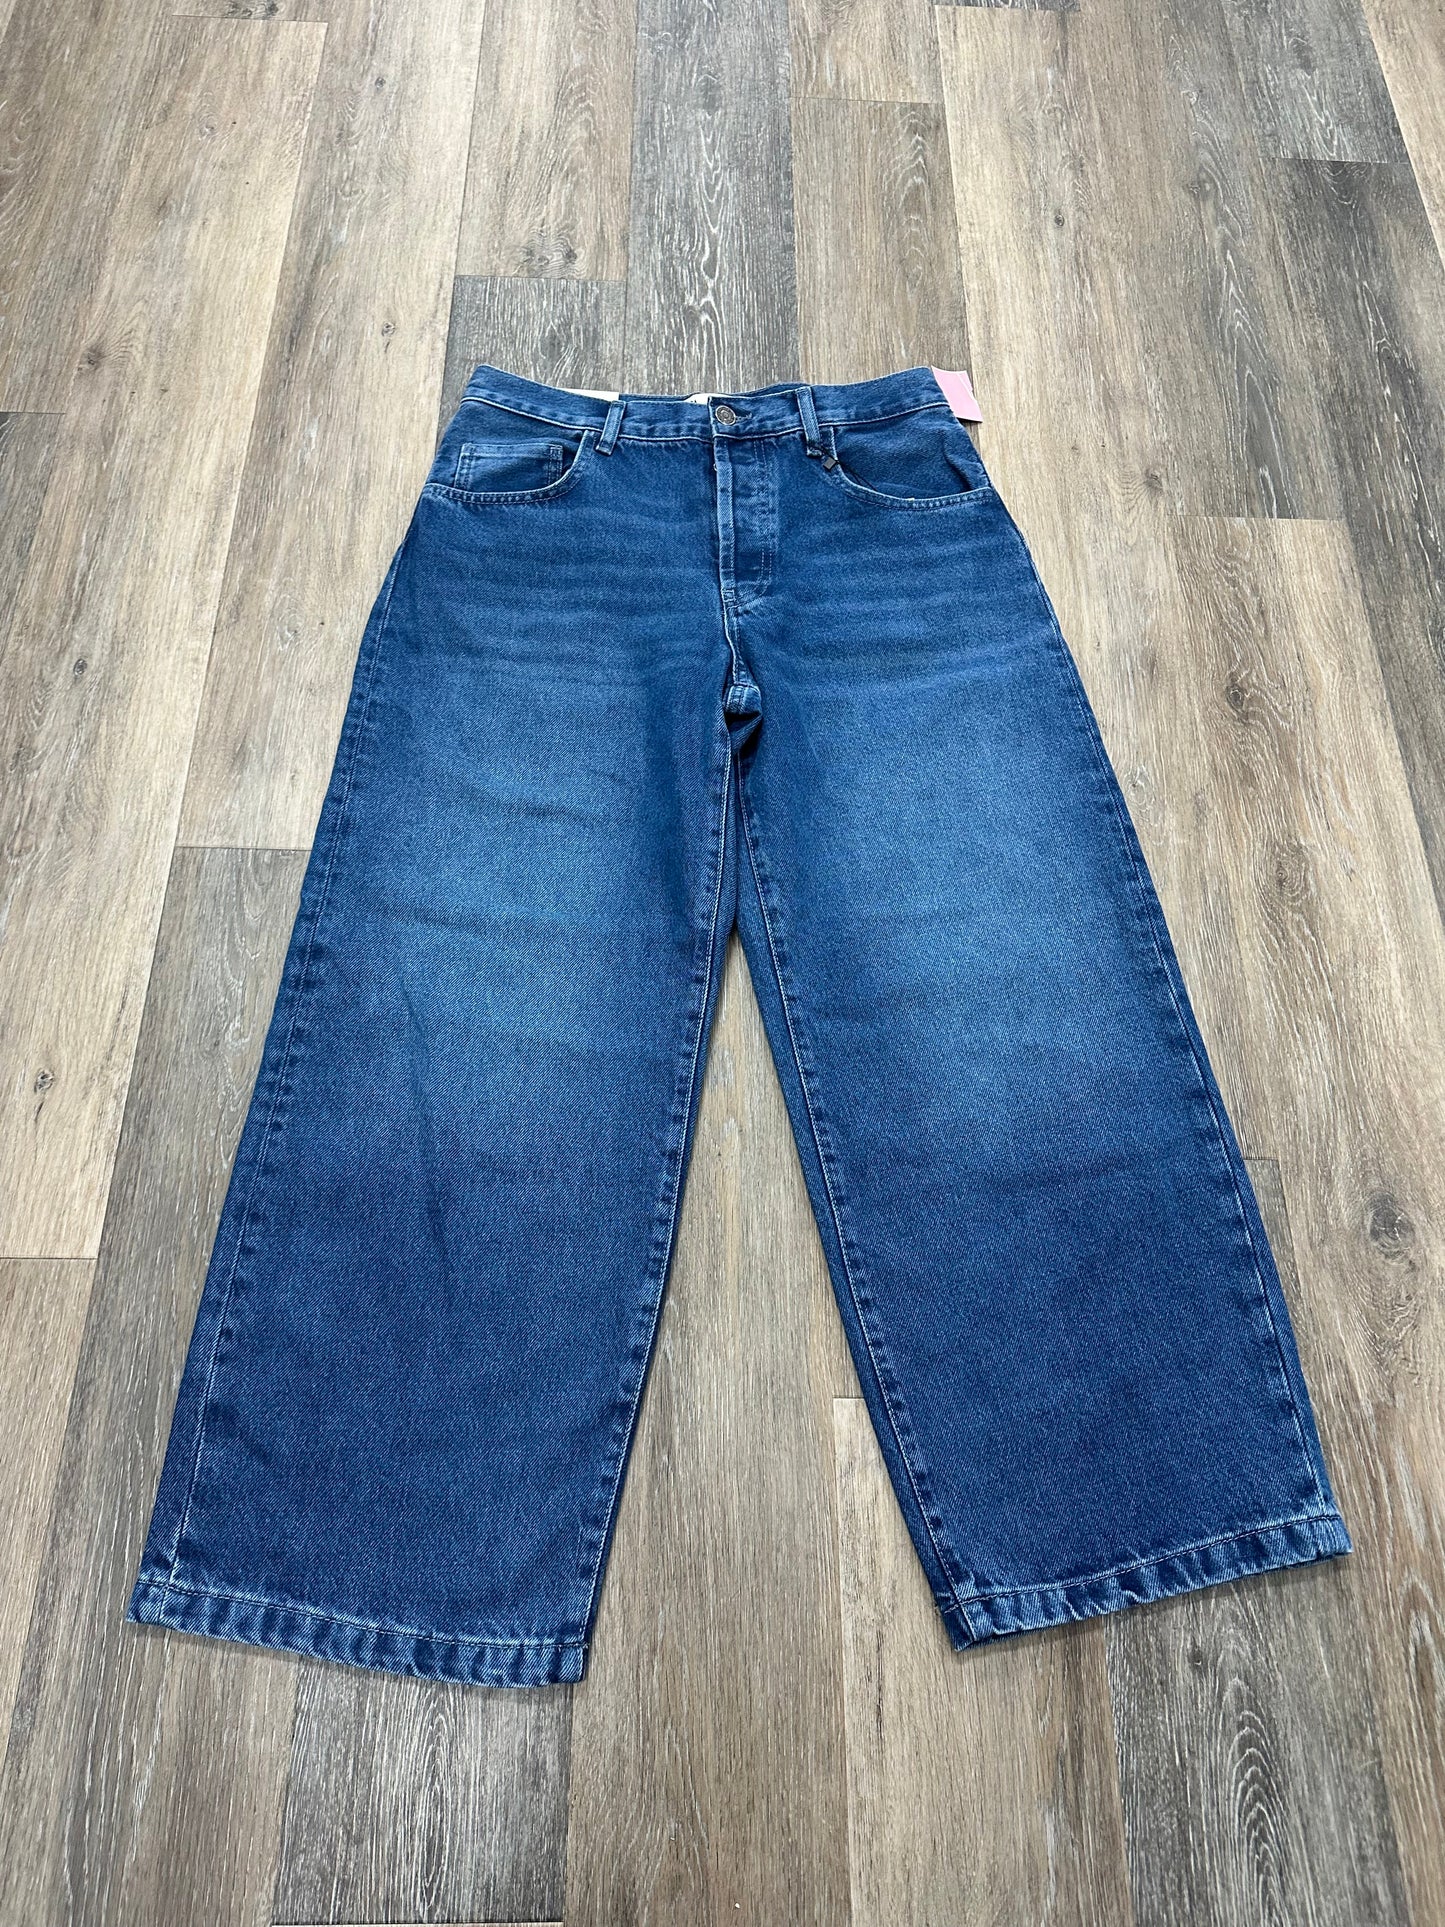 Jeans Straight By Zara  Size: 6